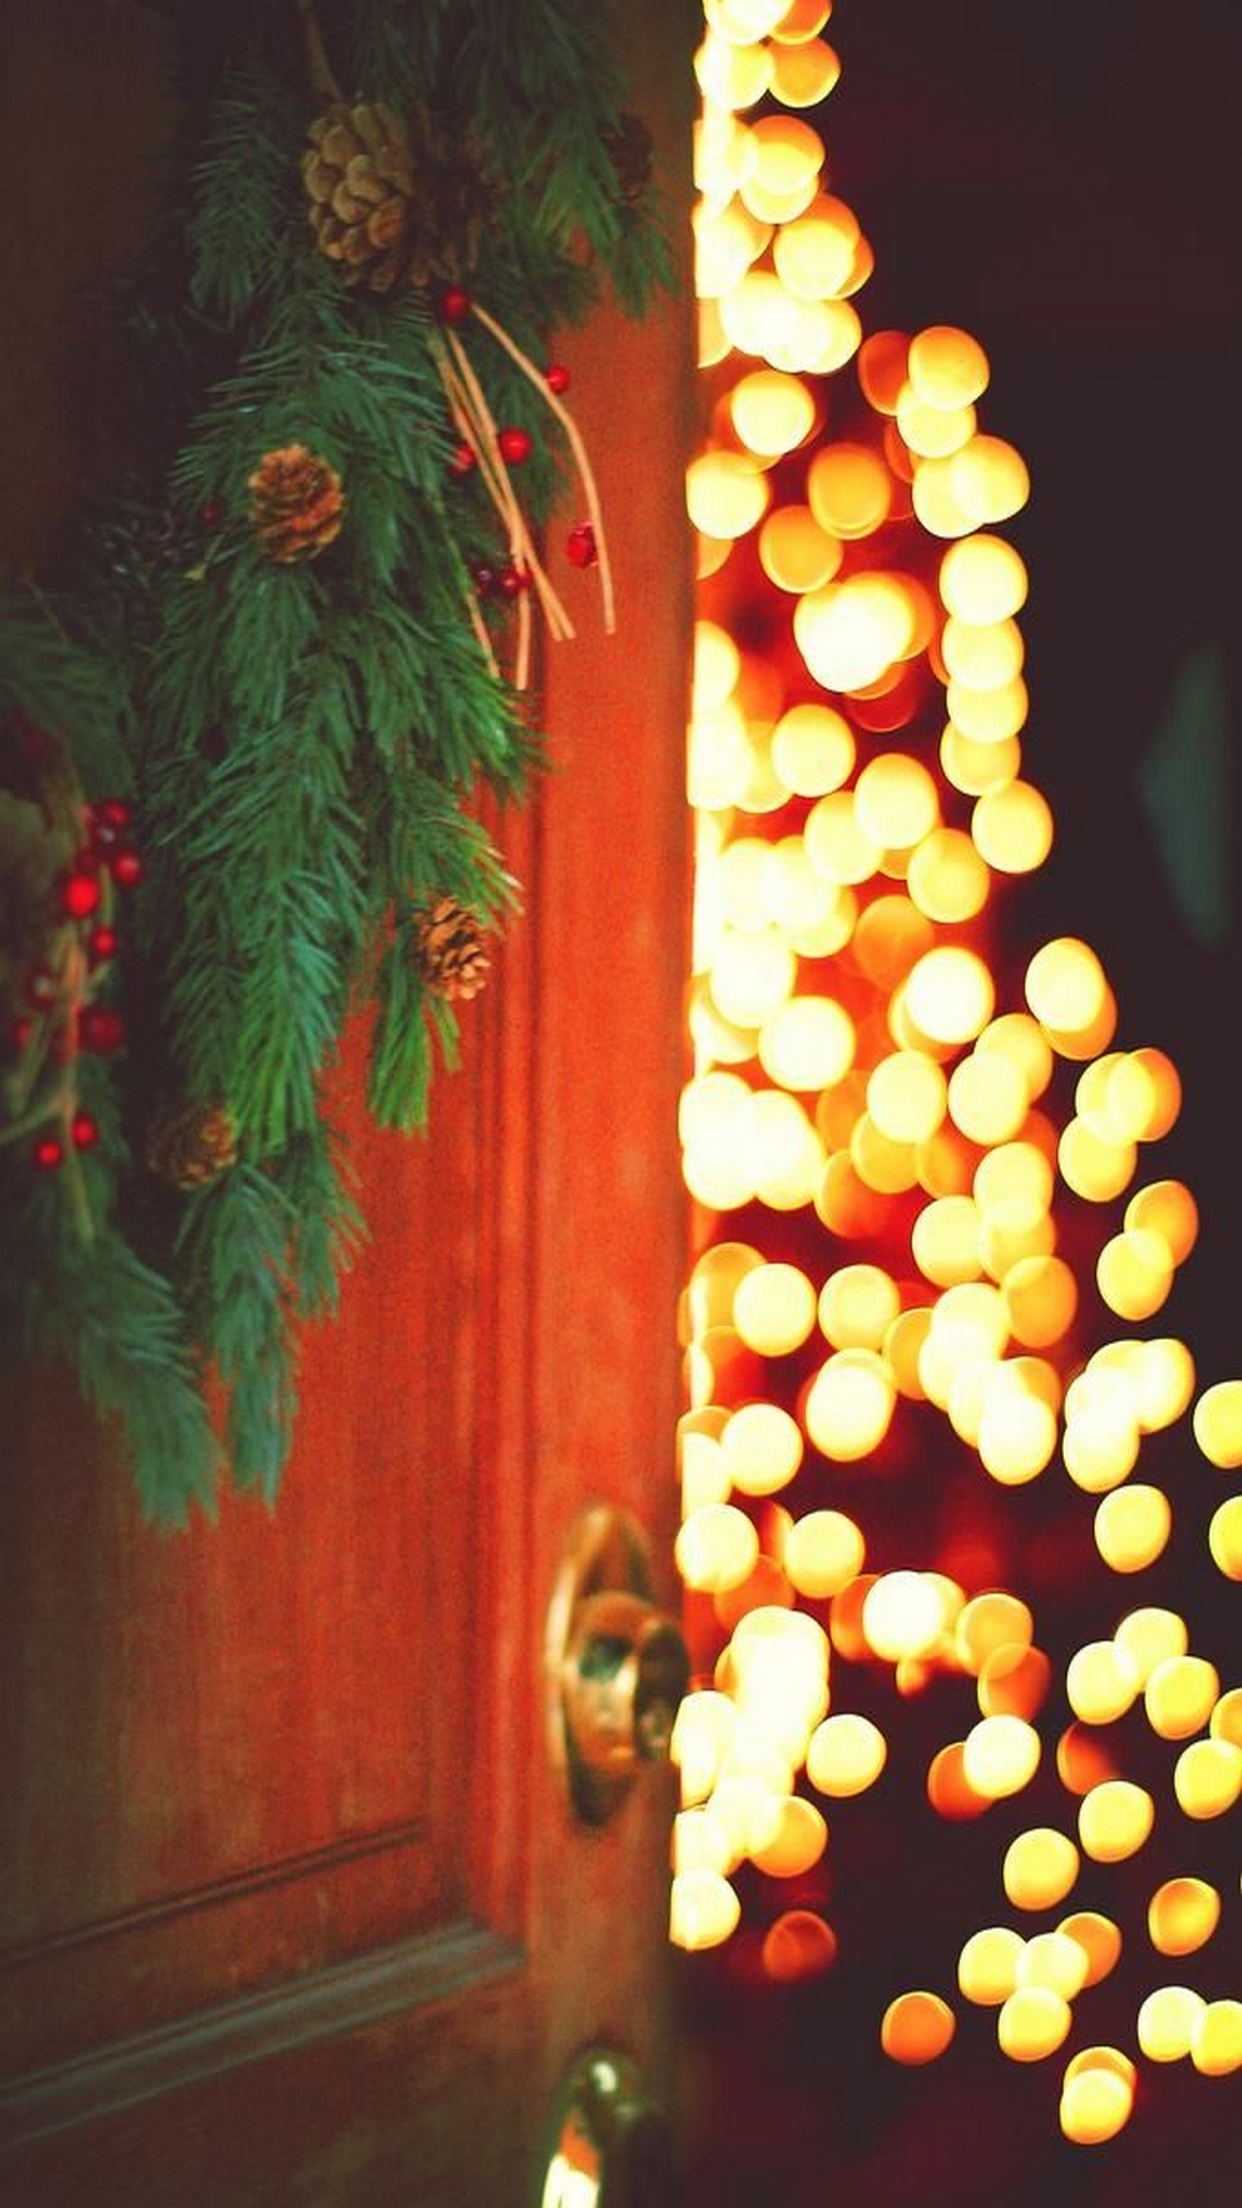 Christmas Hd Wallpaper Lights Iphone - HD Wallpaper 